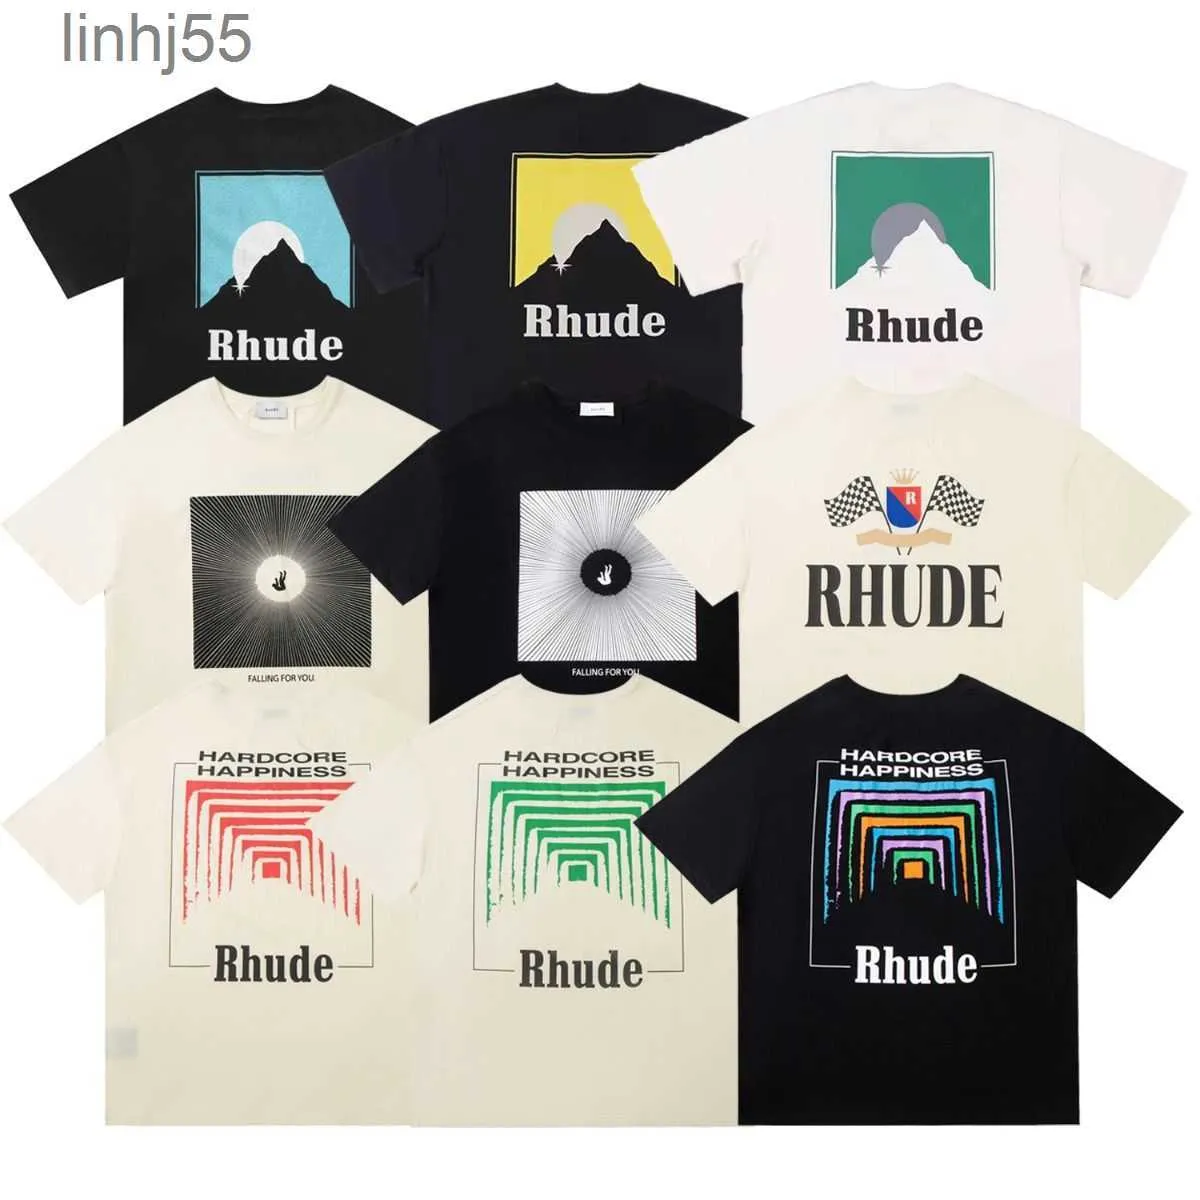 Homens camisetas Rh Designers Mens Rhude Bordado Camisas para Tops de Verão Carta Polos Camisa Camisetas Roupas de Manga Curta Grande Plusootf5A44